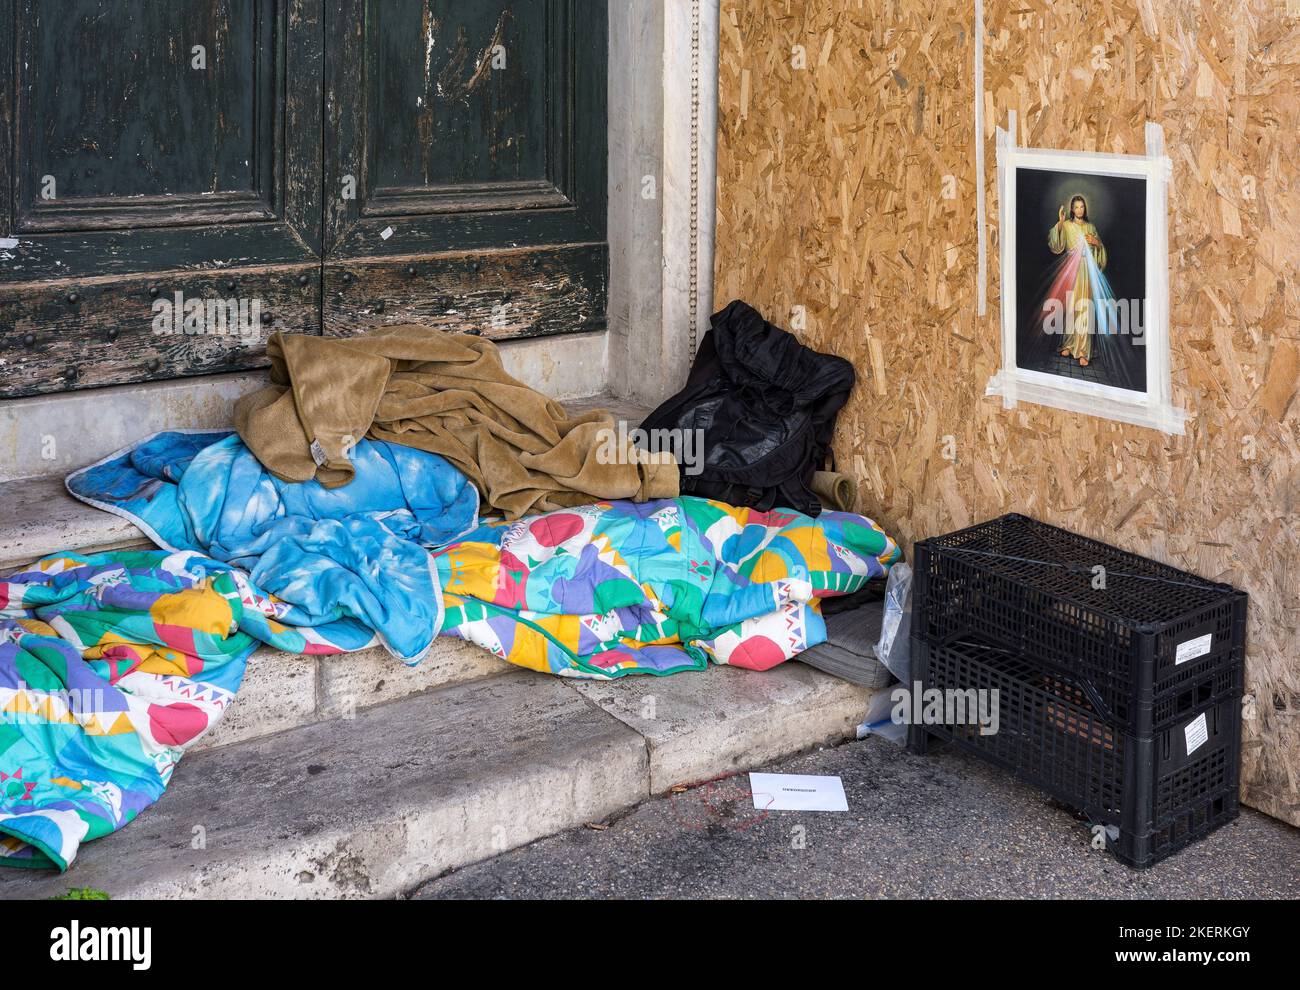 Obdachlos in Rom. Eine Obdachlose, die in einer Tür auf einer Straße in Rom mit einer Ikone von Jusus, die an der Wand befestigt war, um über ihn zu wachen, schlafen. Rom. Latium, It Stockfoto